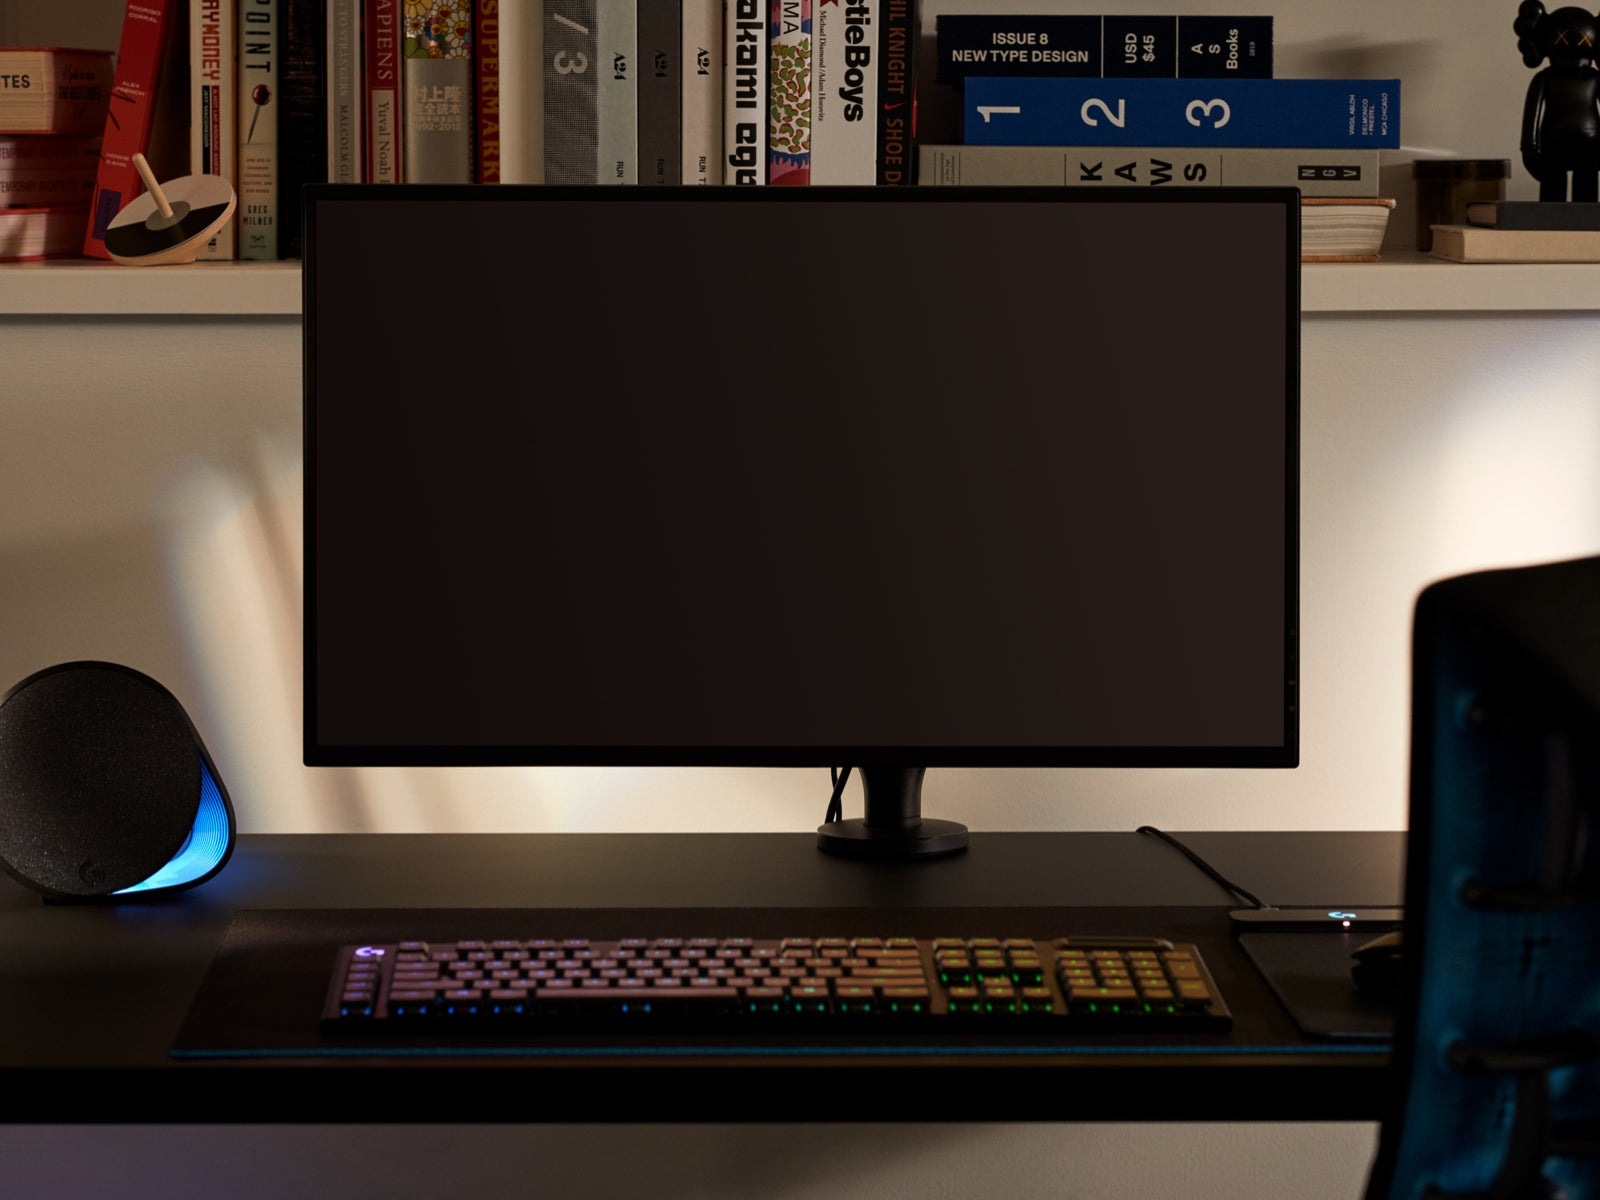 Ein großer Bildschirm, der veranschaulicht, dass der Ollin Monitorarm Bildschirme jeder Größe trägt, ist an dem Arm auf einem Schreibtisch befestigt. Im Vordergrund sieht man eine Tastatur, im Hintergrund Gegenstände auf einem Regal.